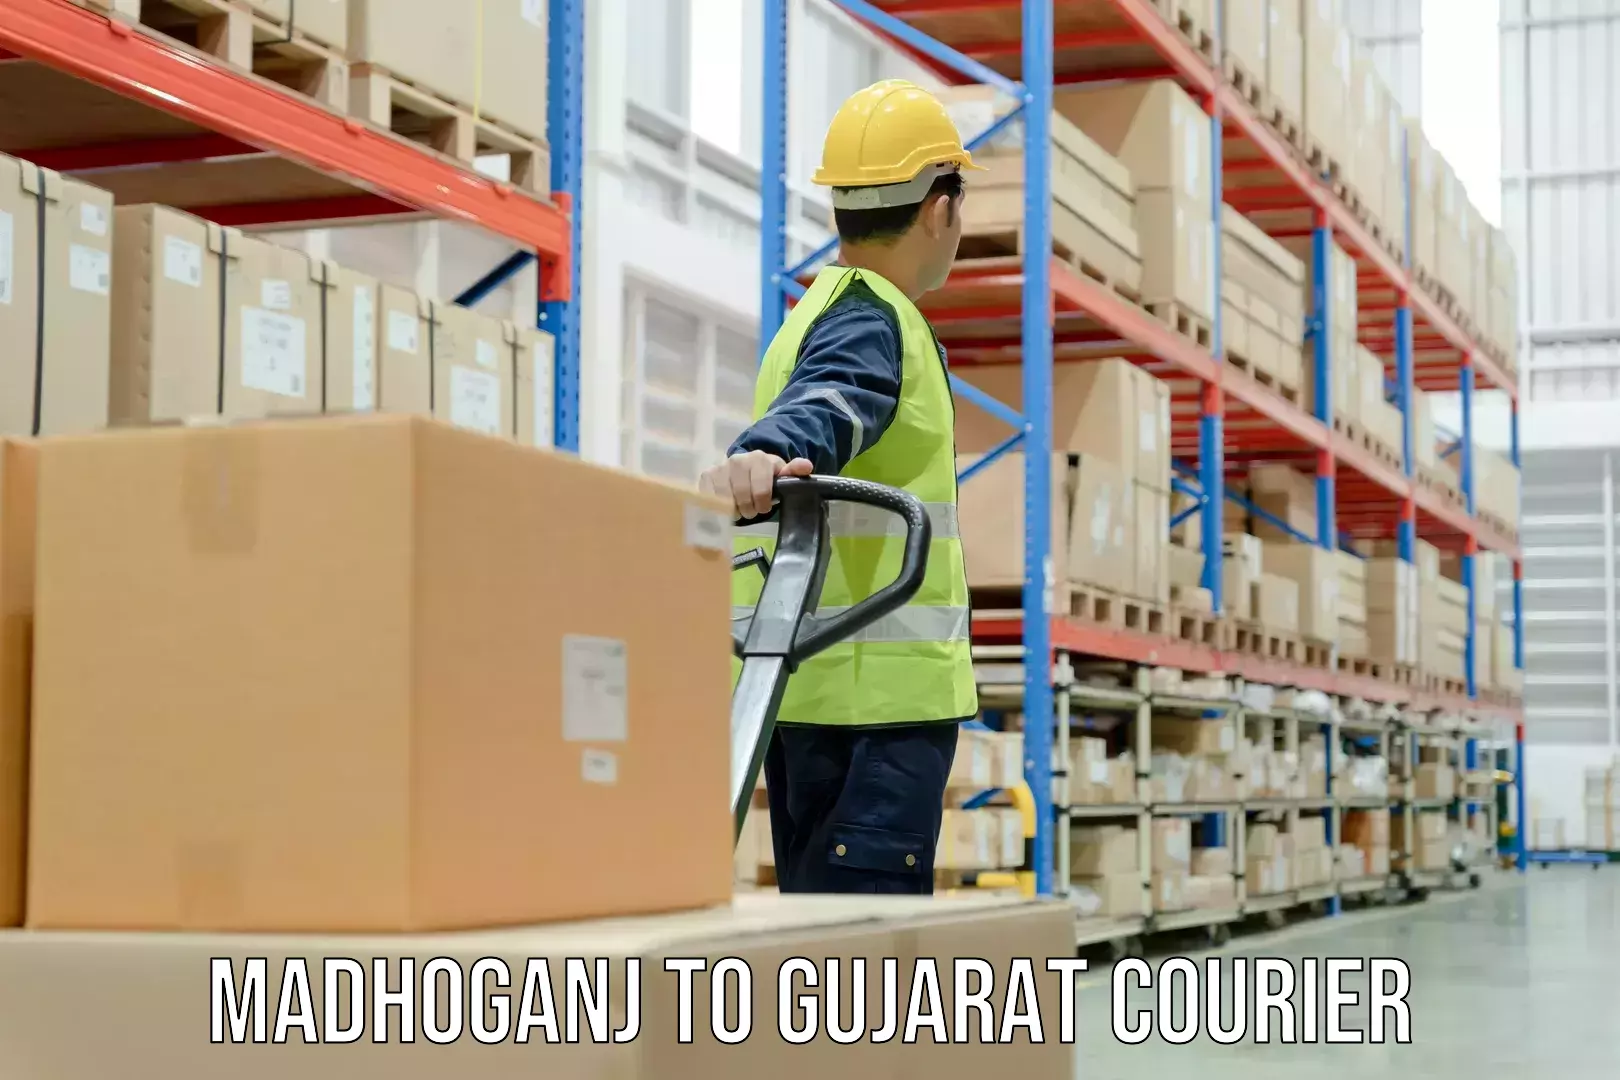 Global logistics network Madhoganj to Dharmaram